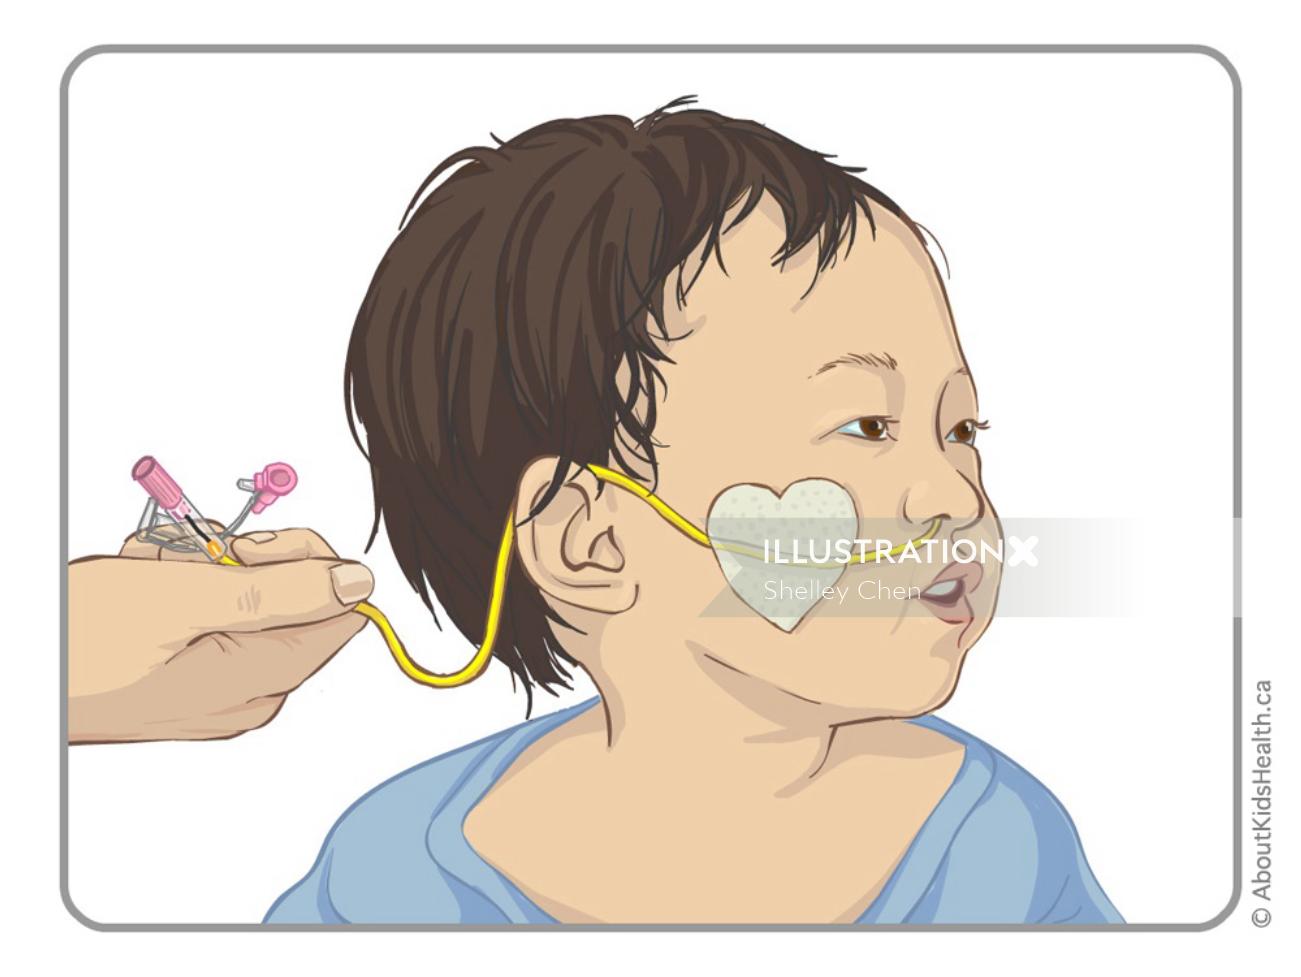 Gravação de tubo NG na ilustração infantil por Shelley Li Wen Chen